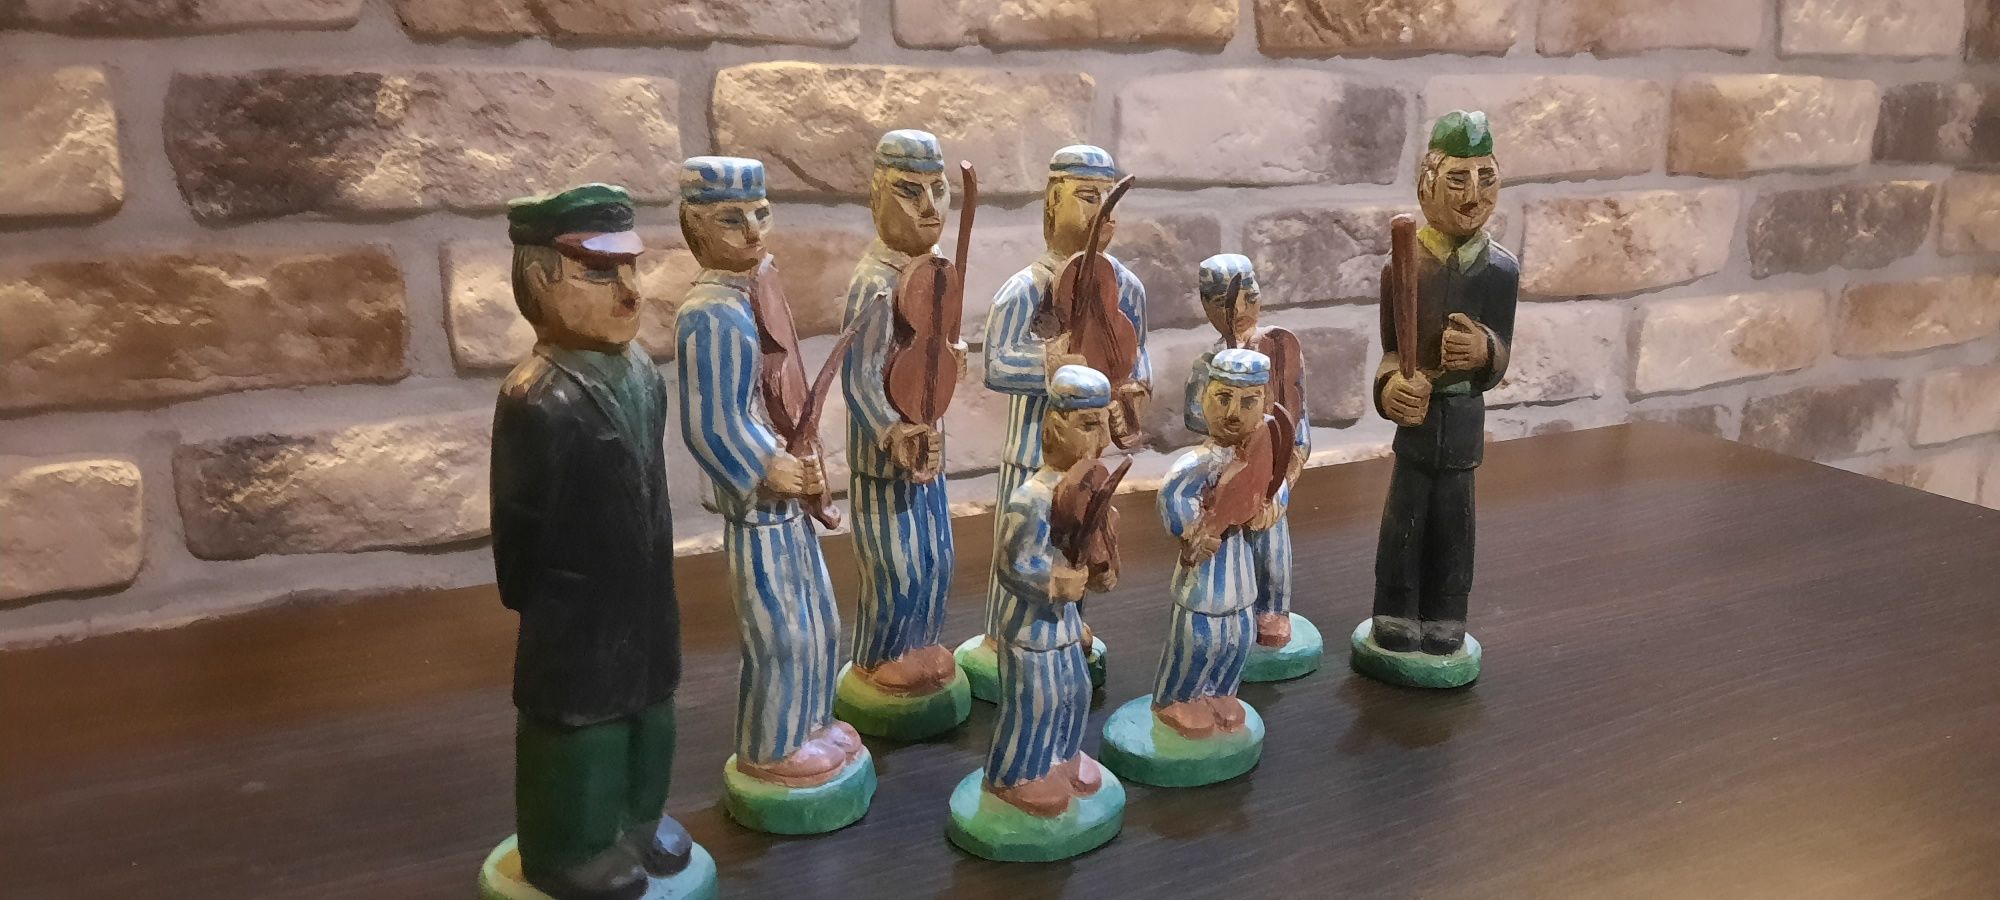 Kolekcja rzeźb ludowych- więźniowie.